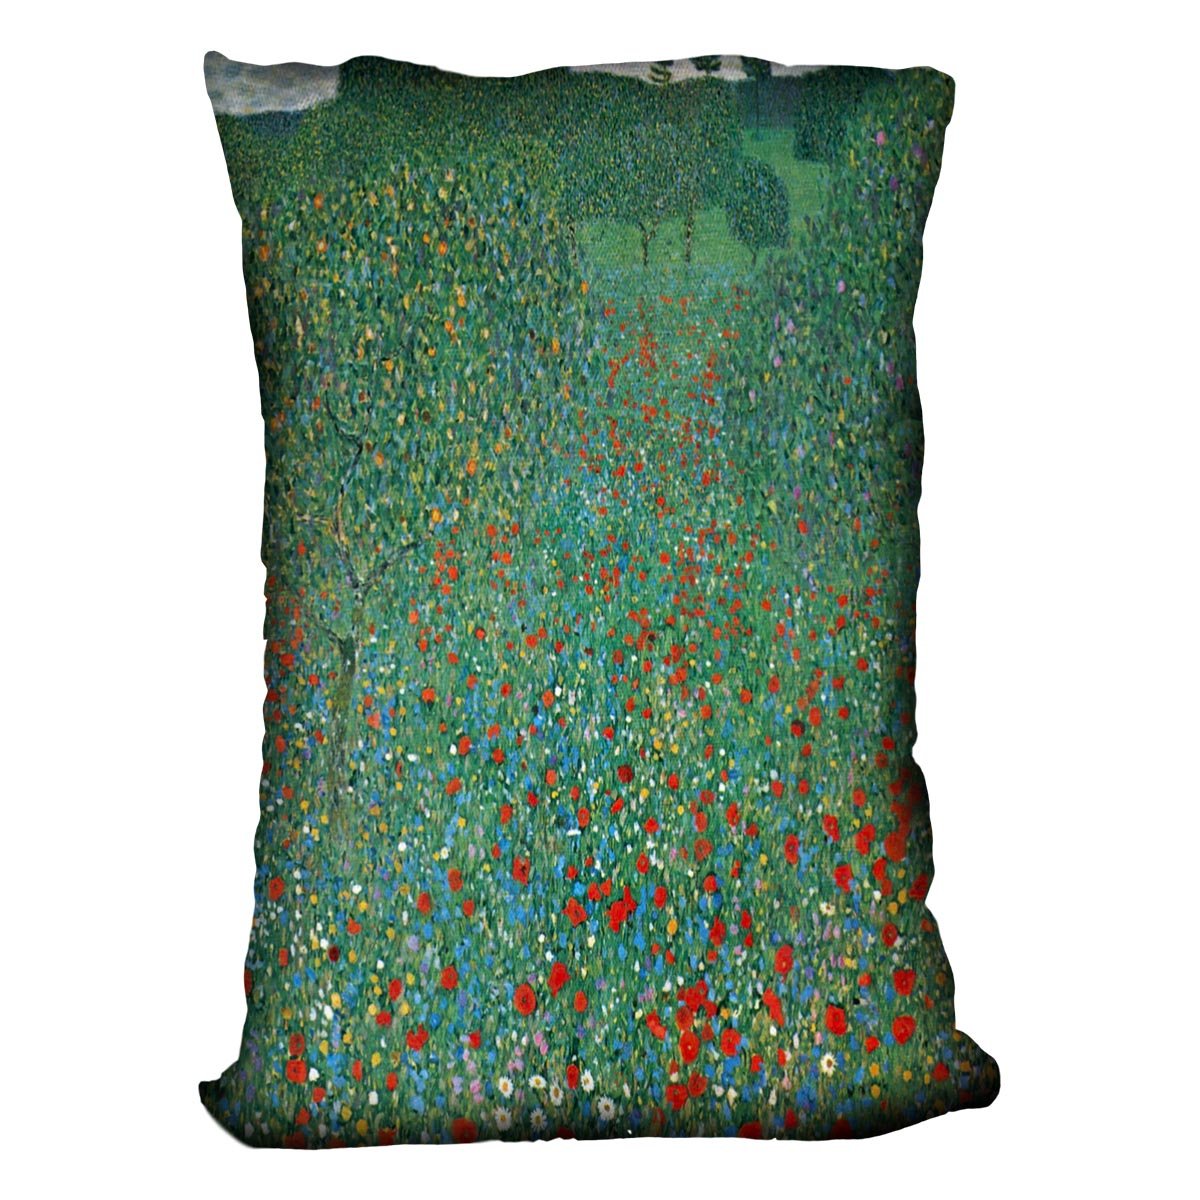 Poppy Field by Klimt Throw Pillow